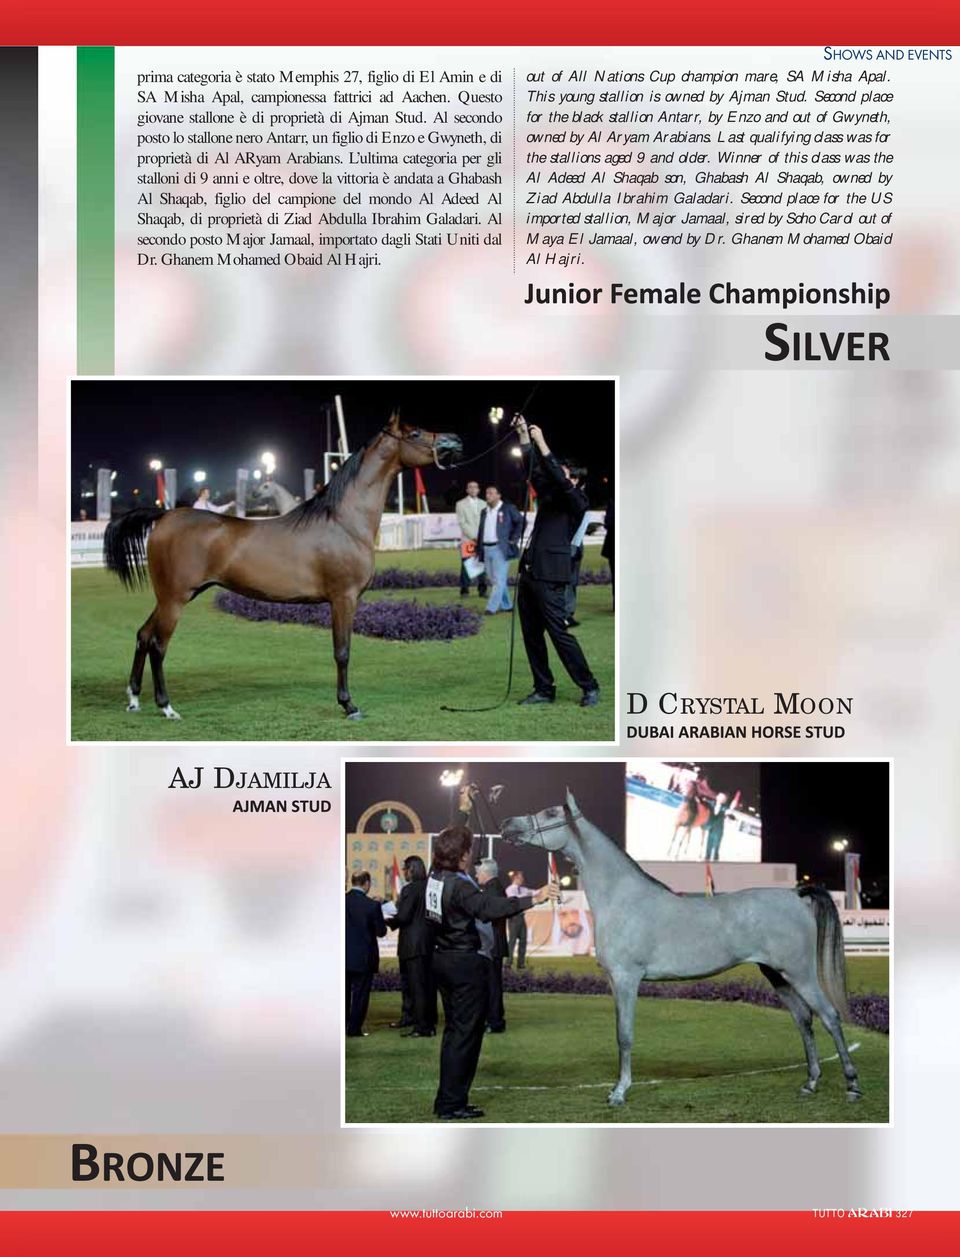 L ultima categoria per gli stalloni di 9 anni e oltre, dove la vittoria è andata a Ghabash Al Shaqab, figlio del campione del mondo Al Adeed Al Shaqab, di proprietà di Ziad Abdulla Ibrahim Galadari.